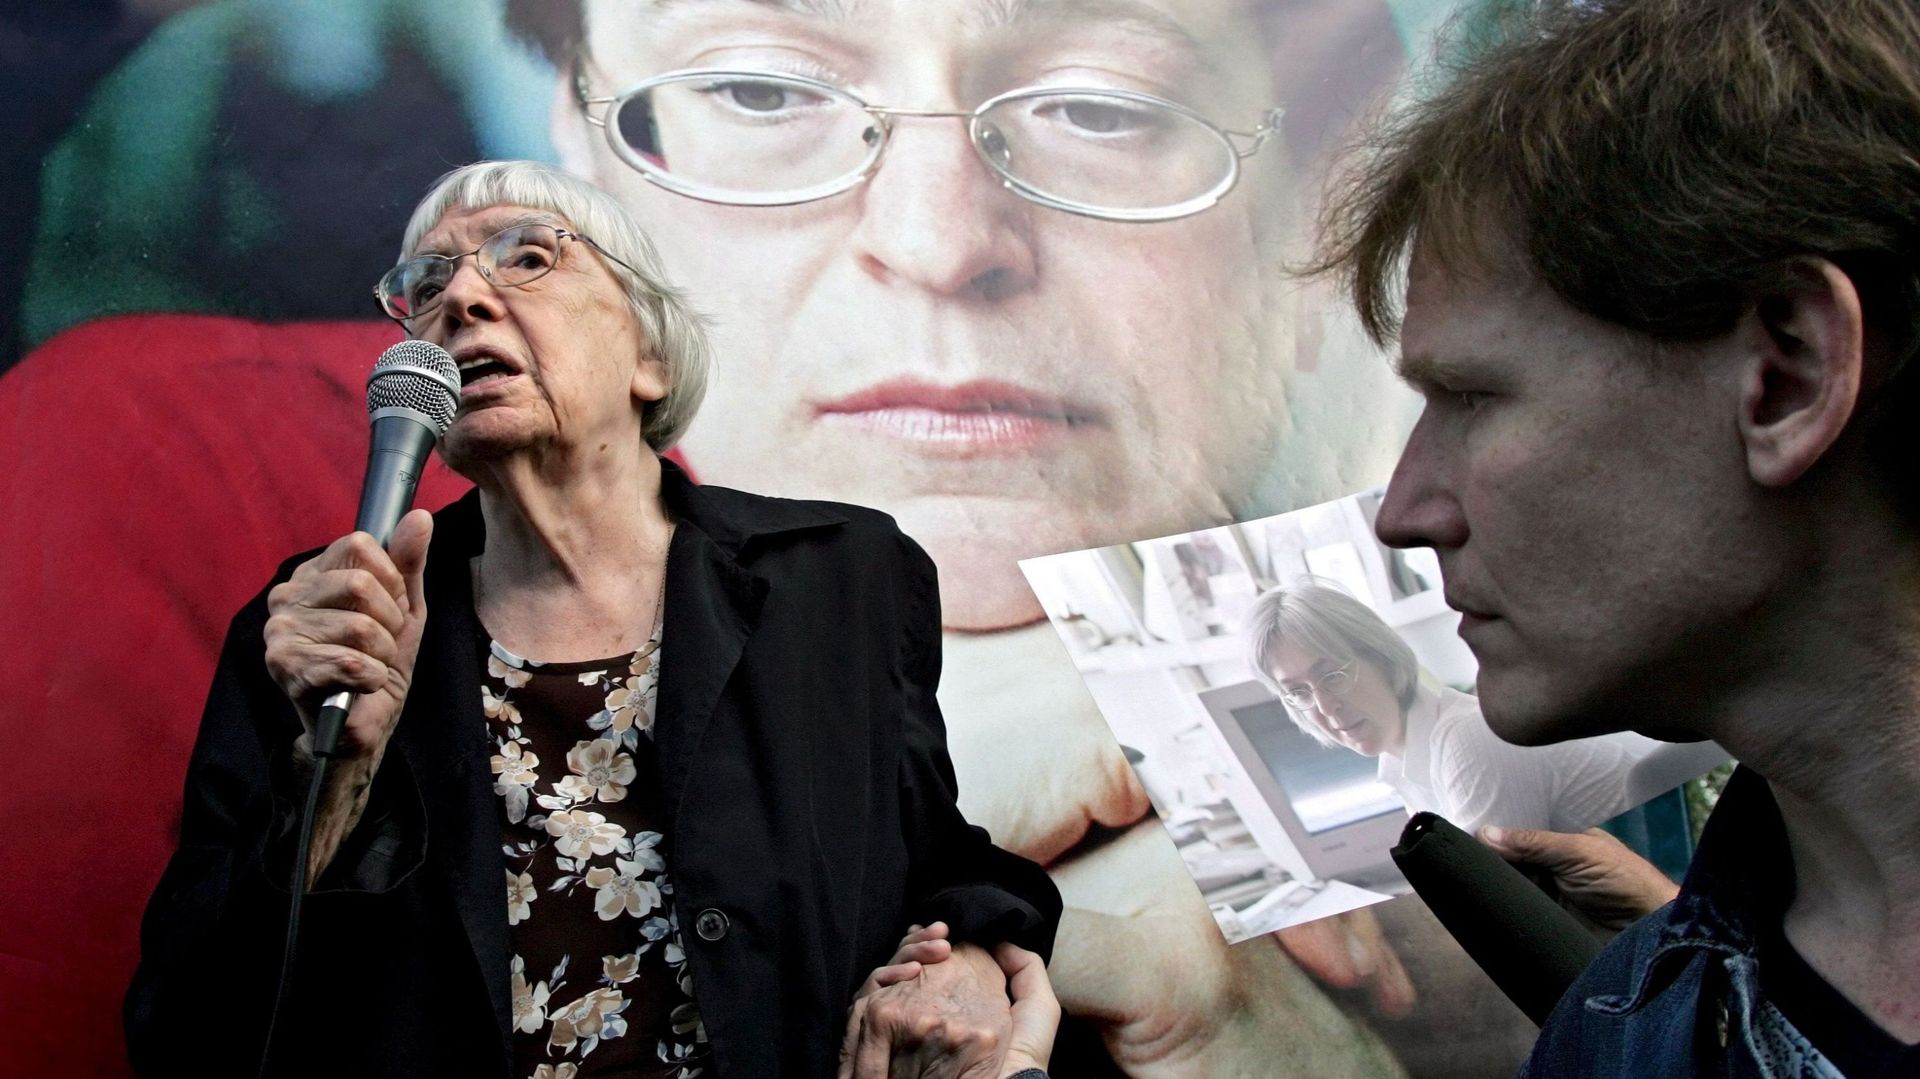 La défenseuse des droits de l'homme, chef du groupe Helsinki de Moscou, Lioudmila Alexeïeva, s'adresse à la population devant un portrait de la journaliste russe Anna Politkovskaï lors d'un rassemblement consacré à son anniversaire à Moscou, en Russie, le